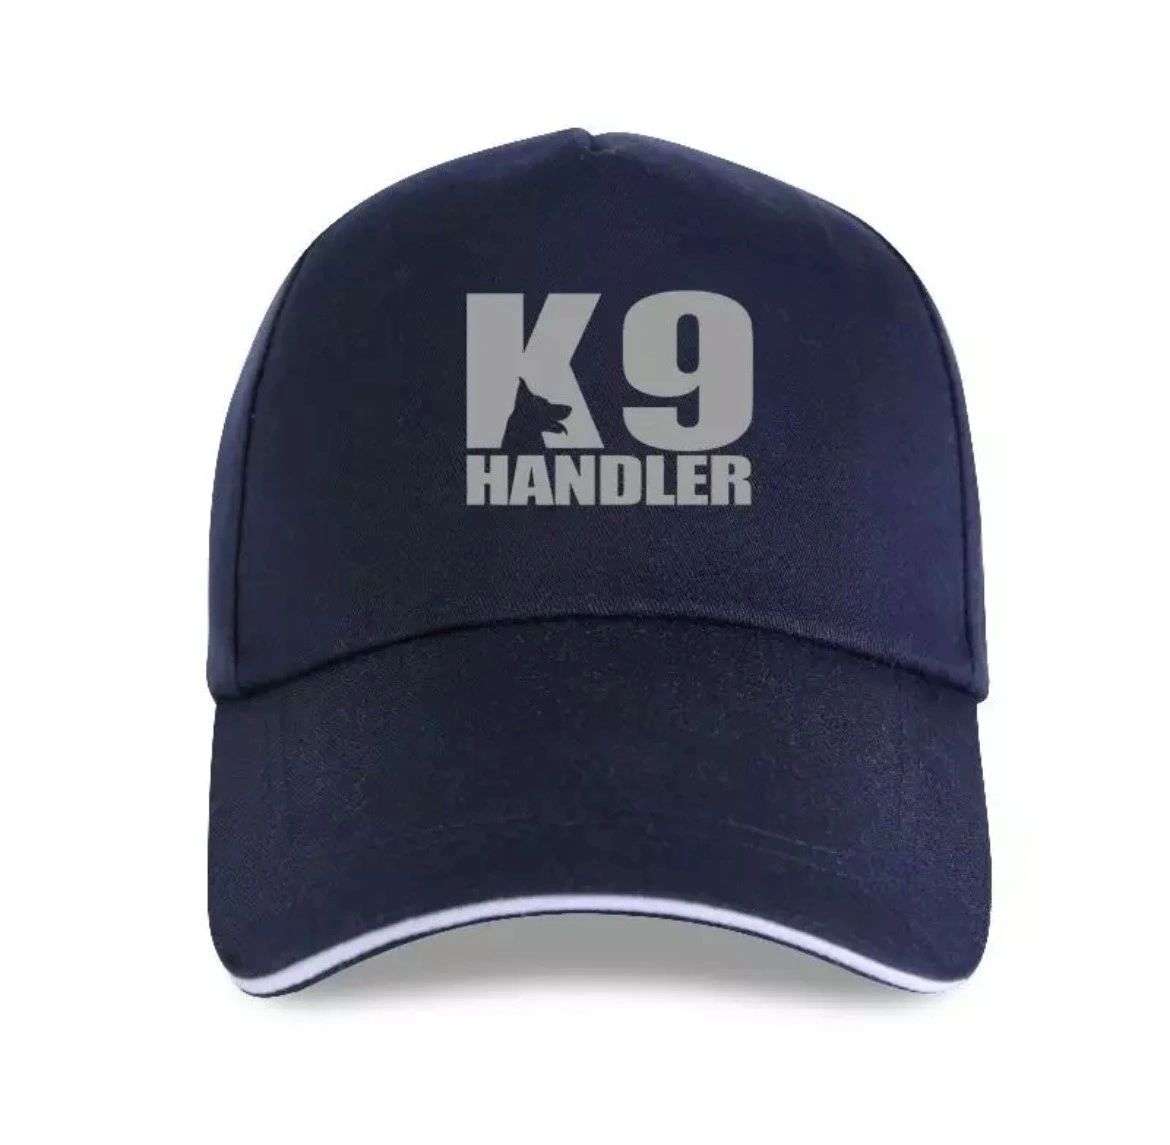 K9 Handler Caps